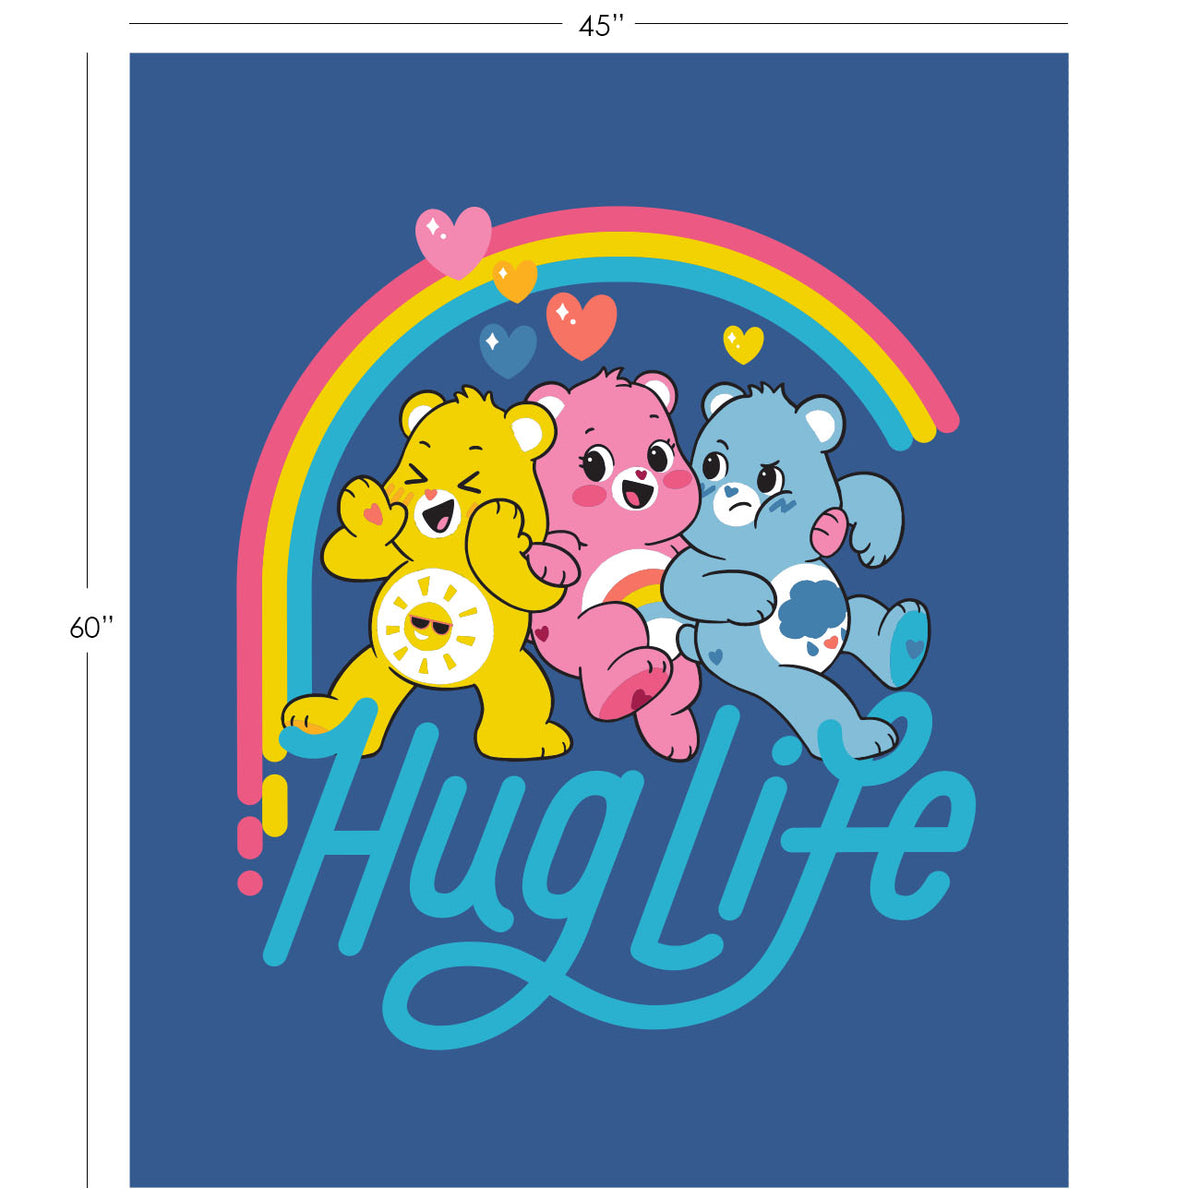 Care Bears - Hug Life Panel 45x60"